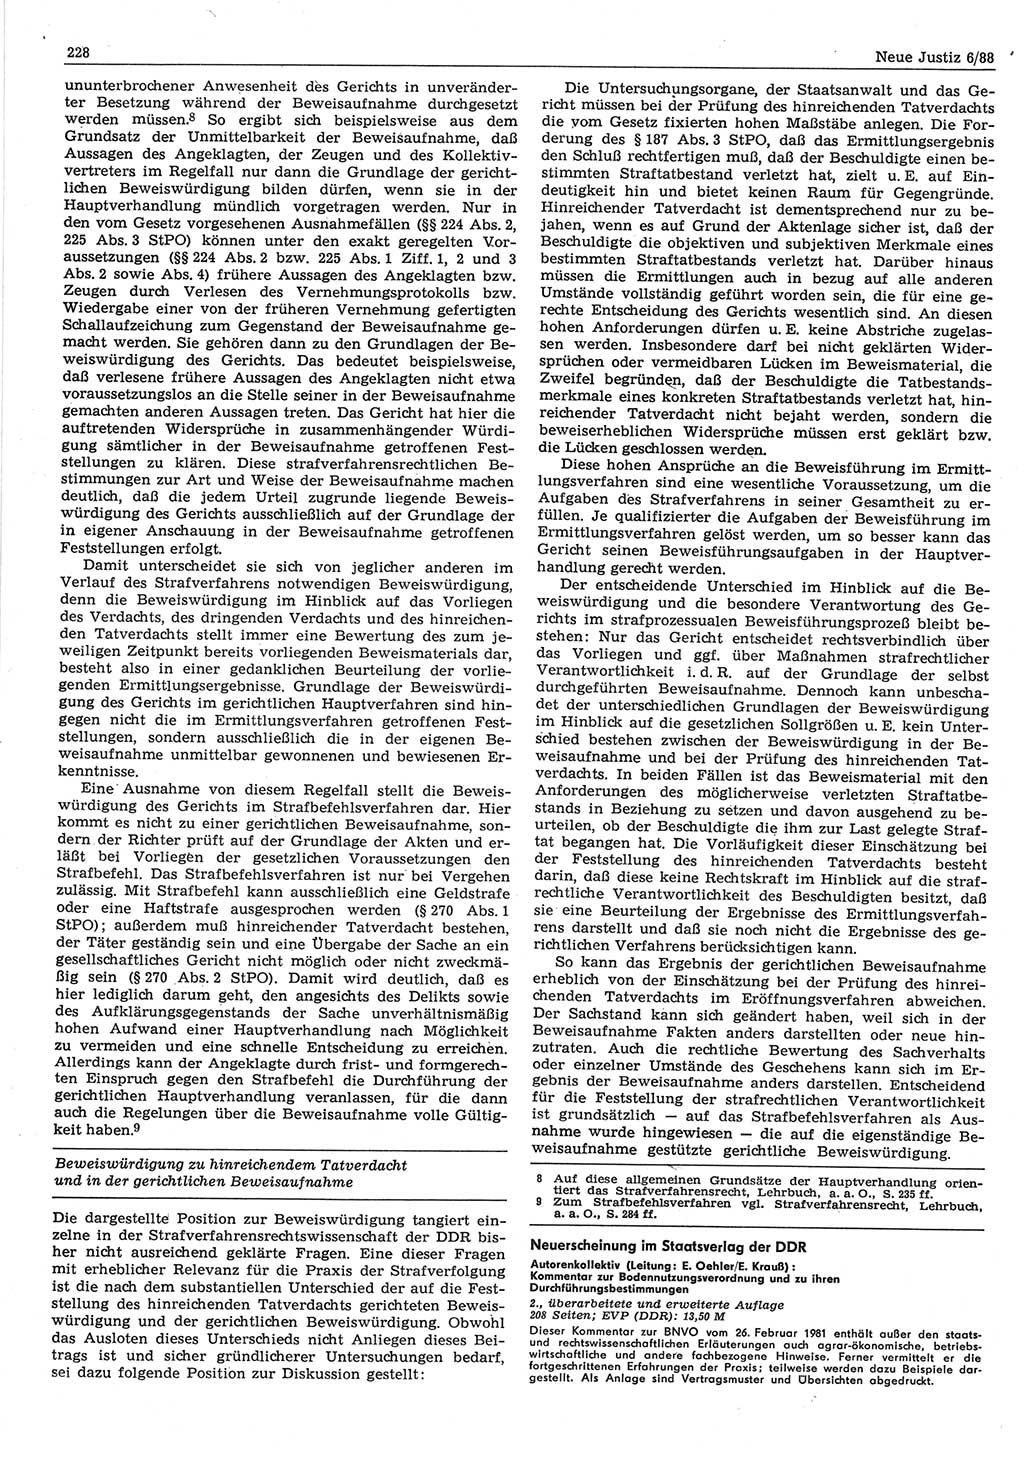 Neue Justiz (NJ), Zeitschrift für sozialistisches Recht und Gesetzlichkeit [Deutsche Demokratische Republik (DDR)], 42. Jahrgang 1988, Seite 228 (NJ DDR 1988, S. 228)